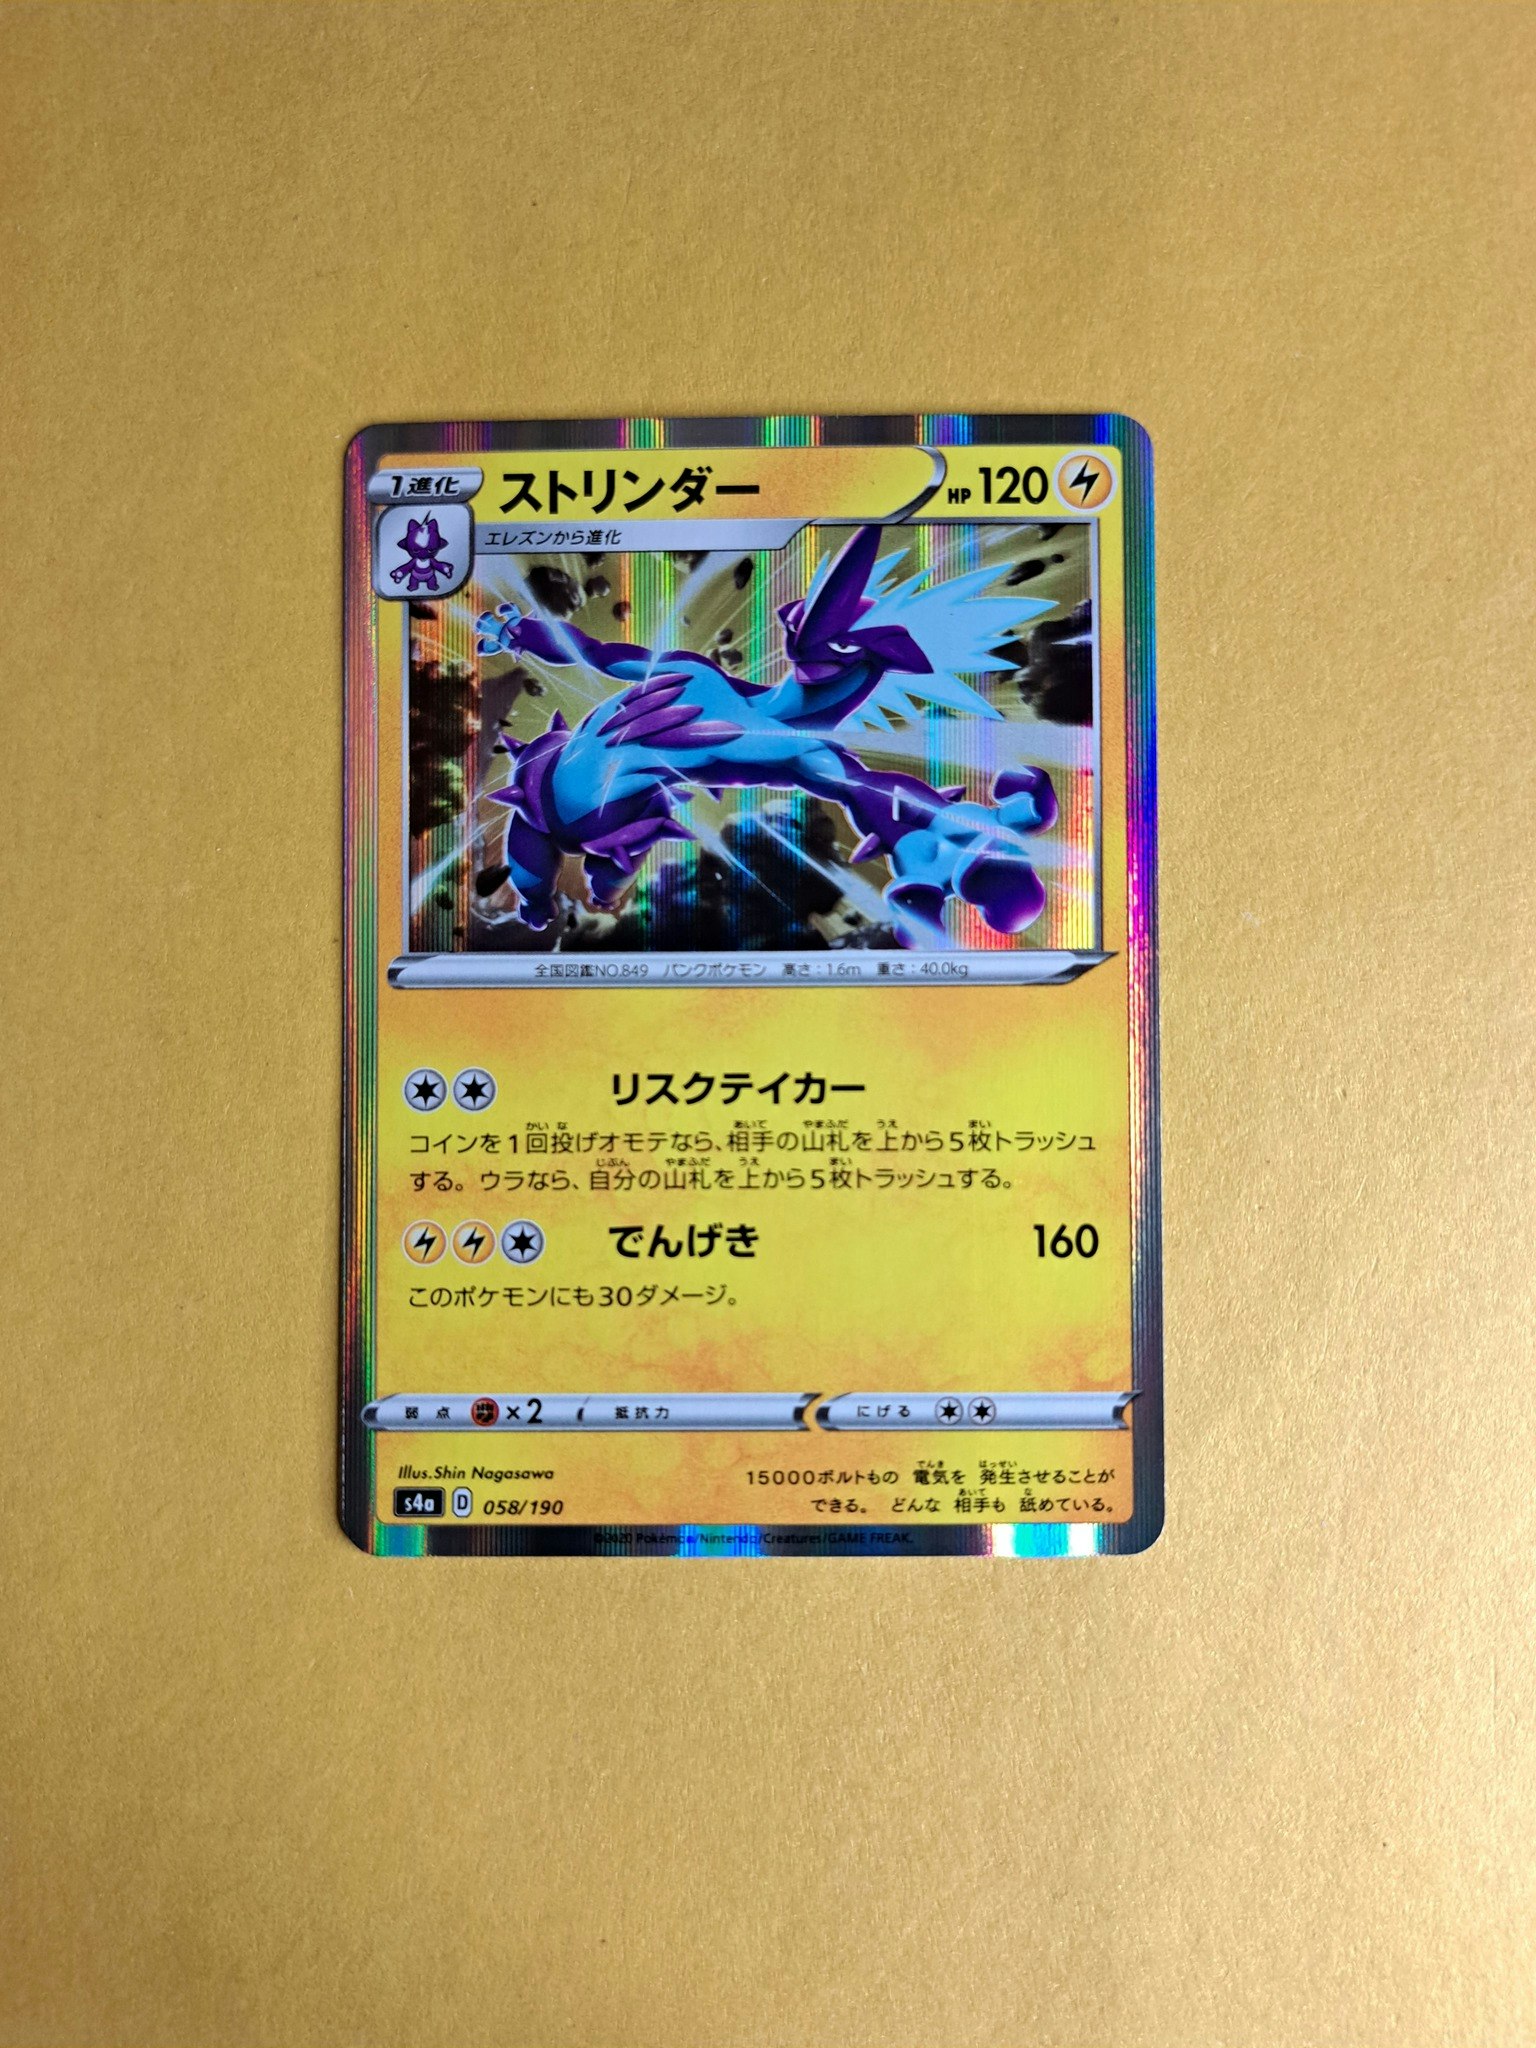 Toxtricity Holo 058/190 Shiny Star V s4a Pokemon